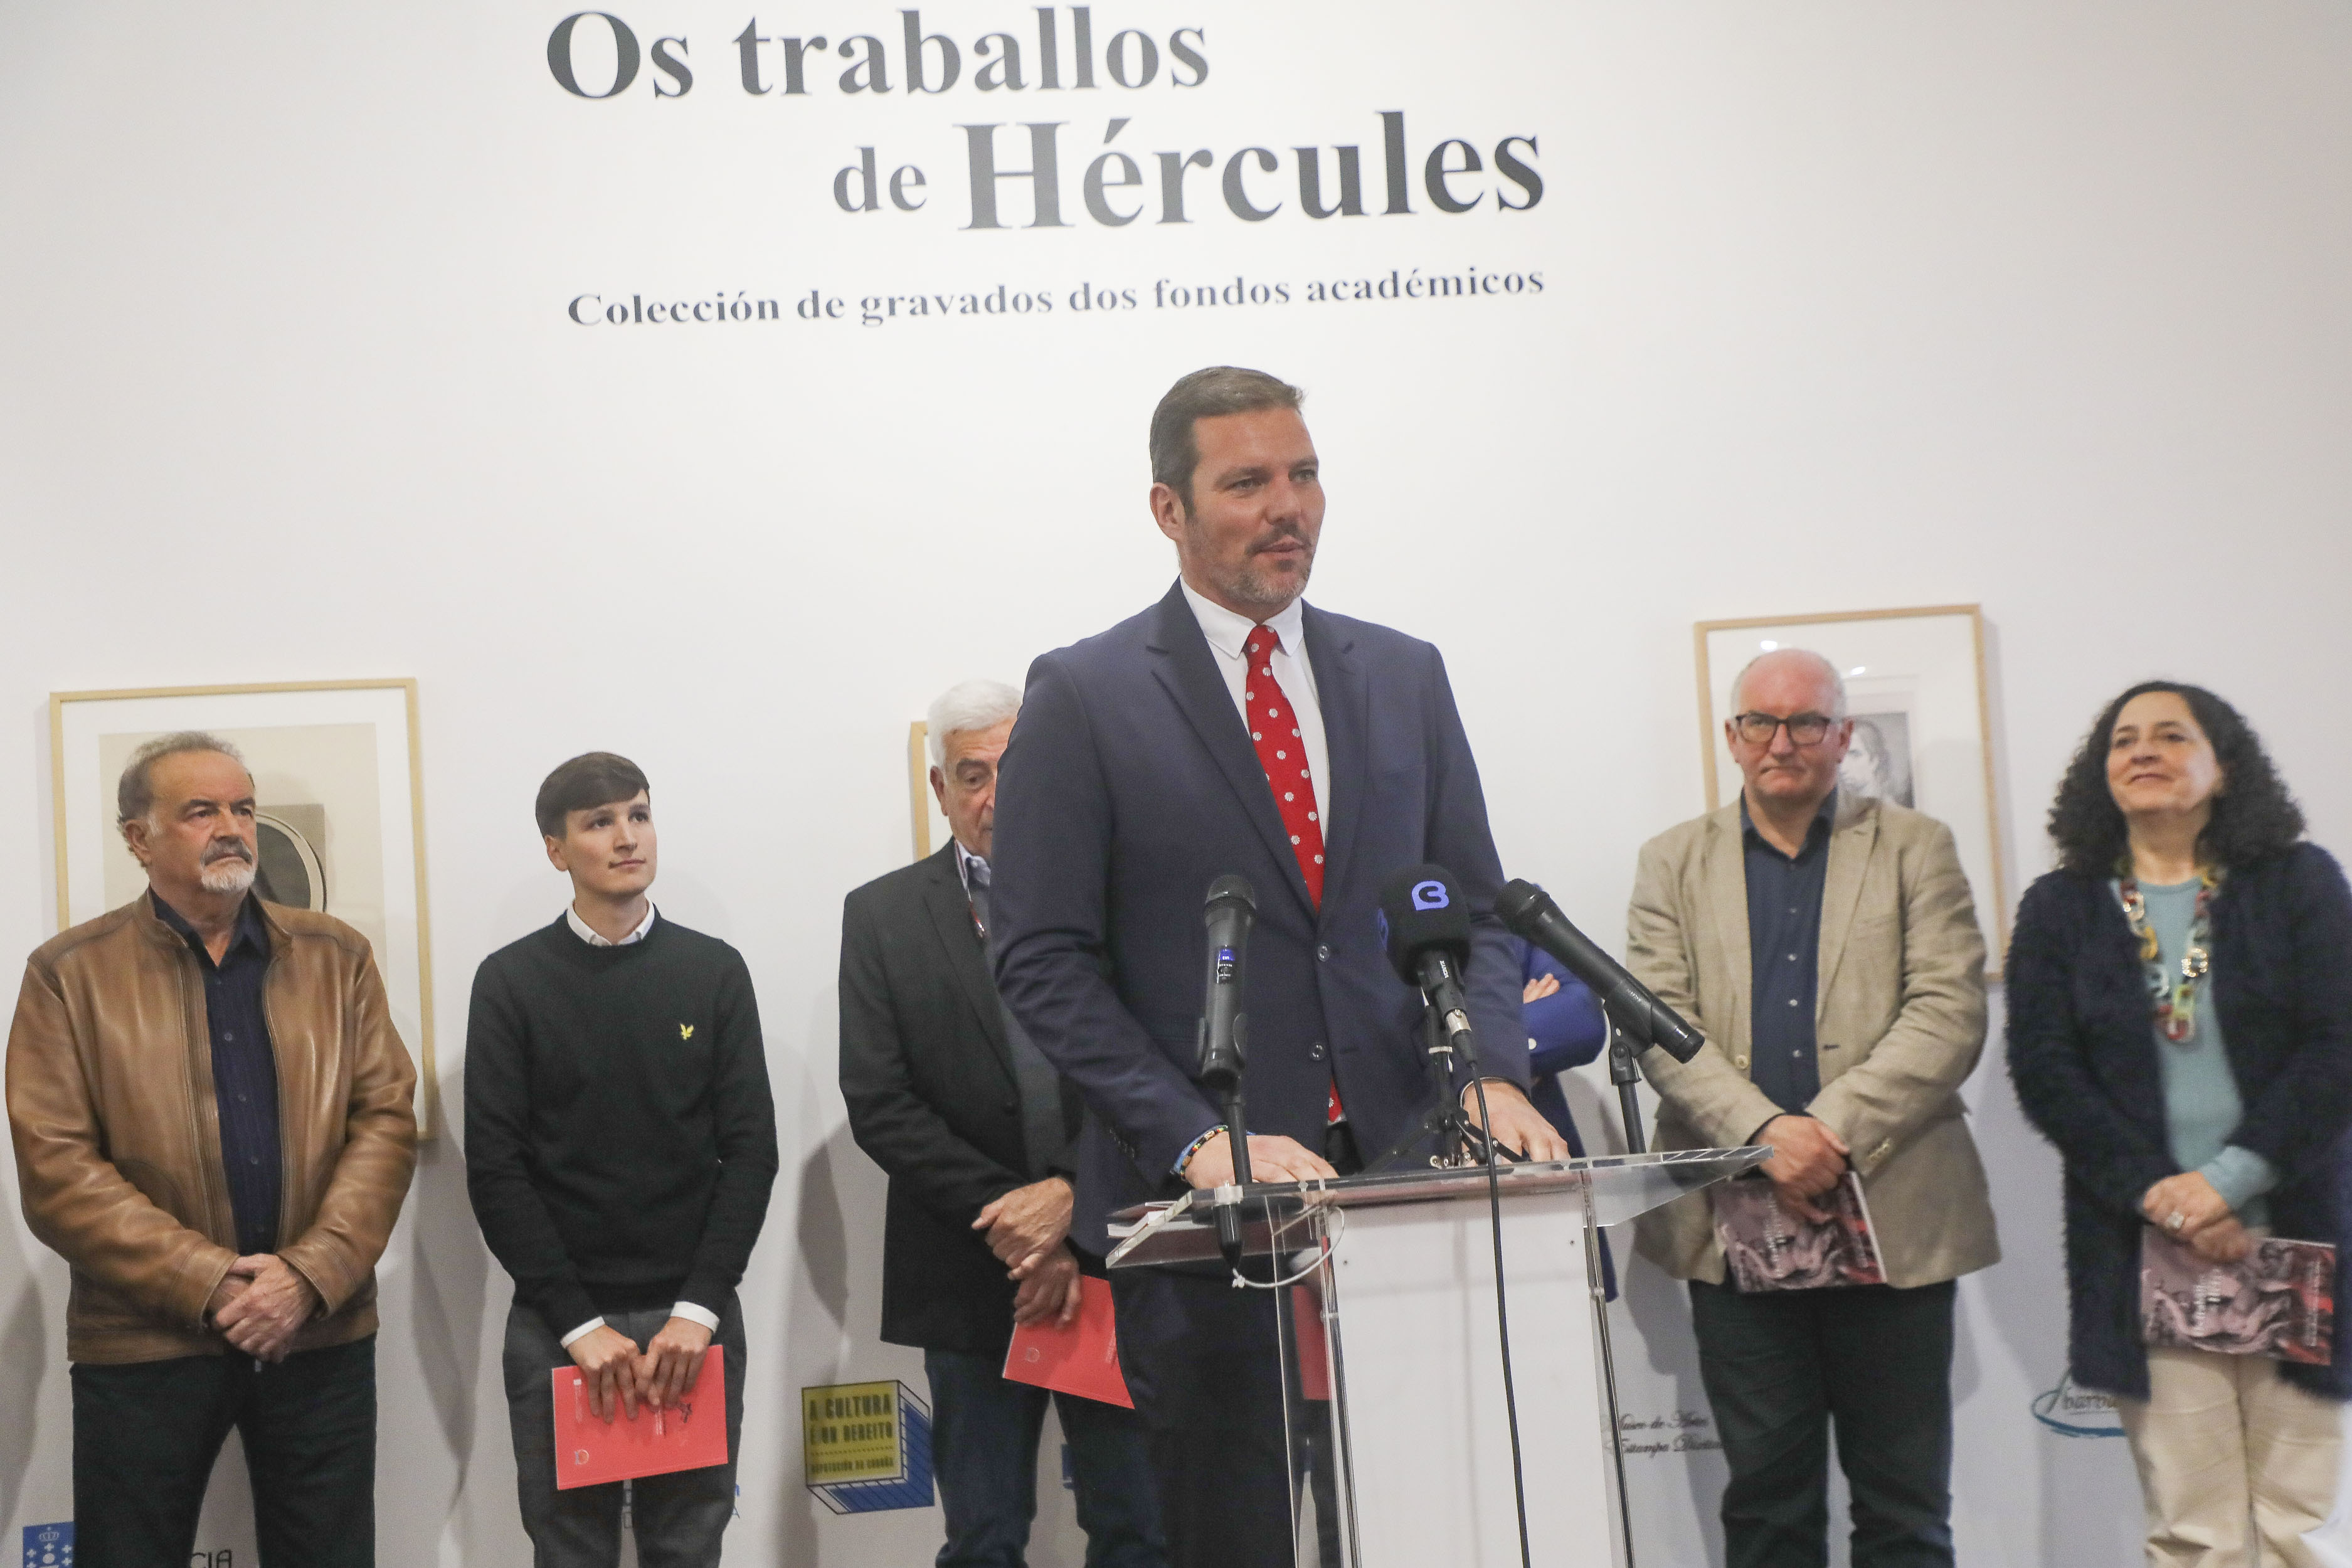 Image 5 of article López Campos convida a redescubrir a historia da Real Academia Galega de Belas Artes coa nova exposición Os traballos de Hércules